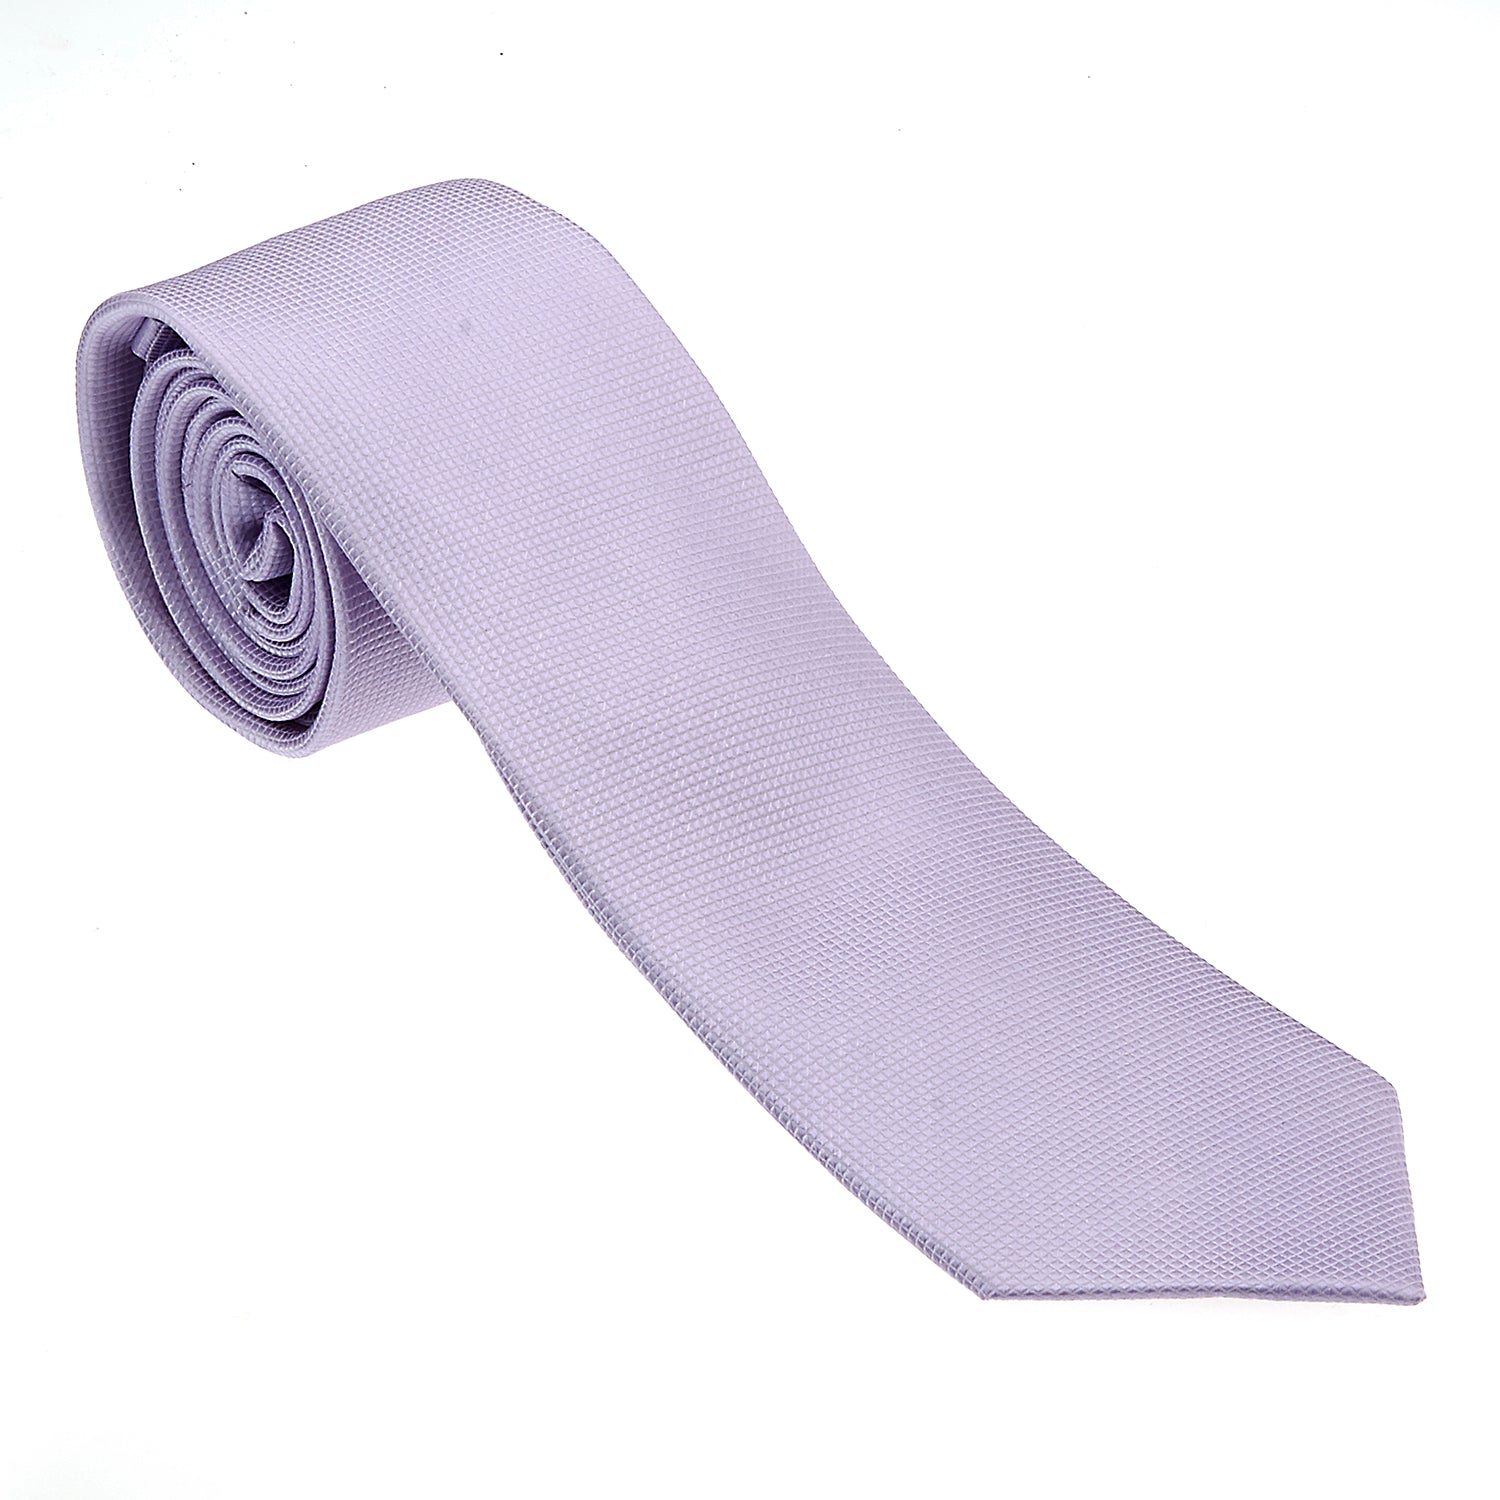 Lavender Tie-The Suit Spot-Wedding Suits-Wedding Tuxedos-Groomsmen Suits-Groomsmen Tuxedos-Slim Fit Suits-Slim Fit Tuxedos-Online wedding suits